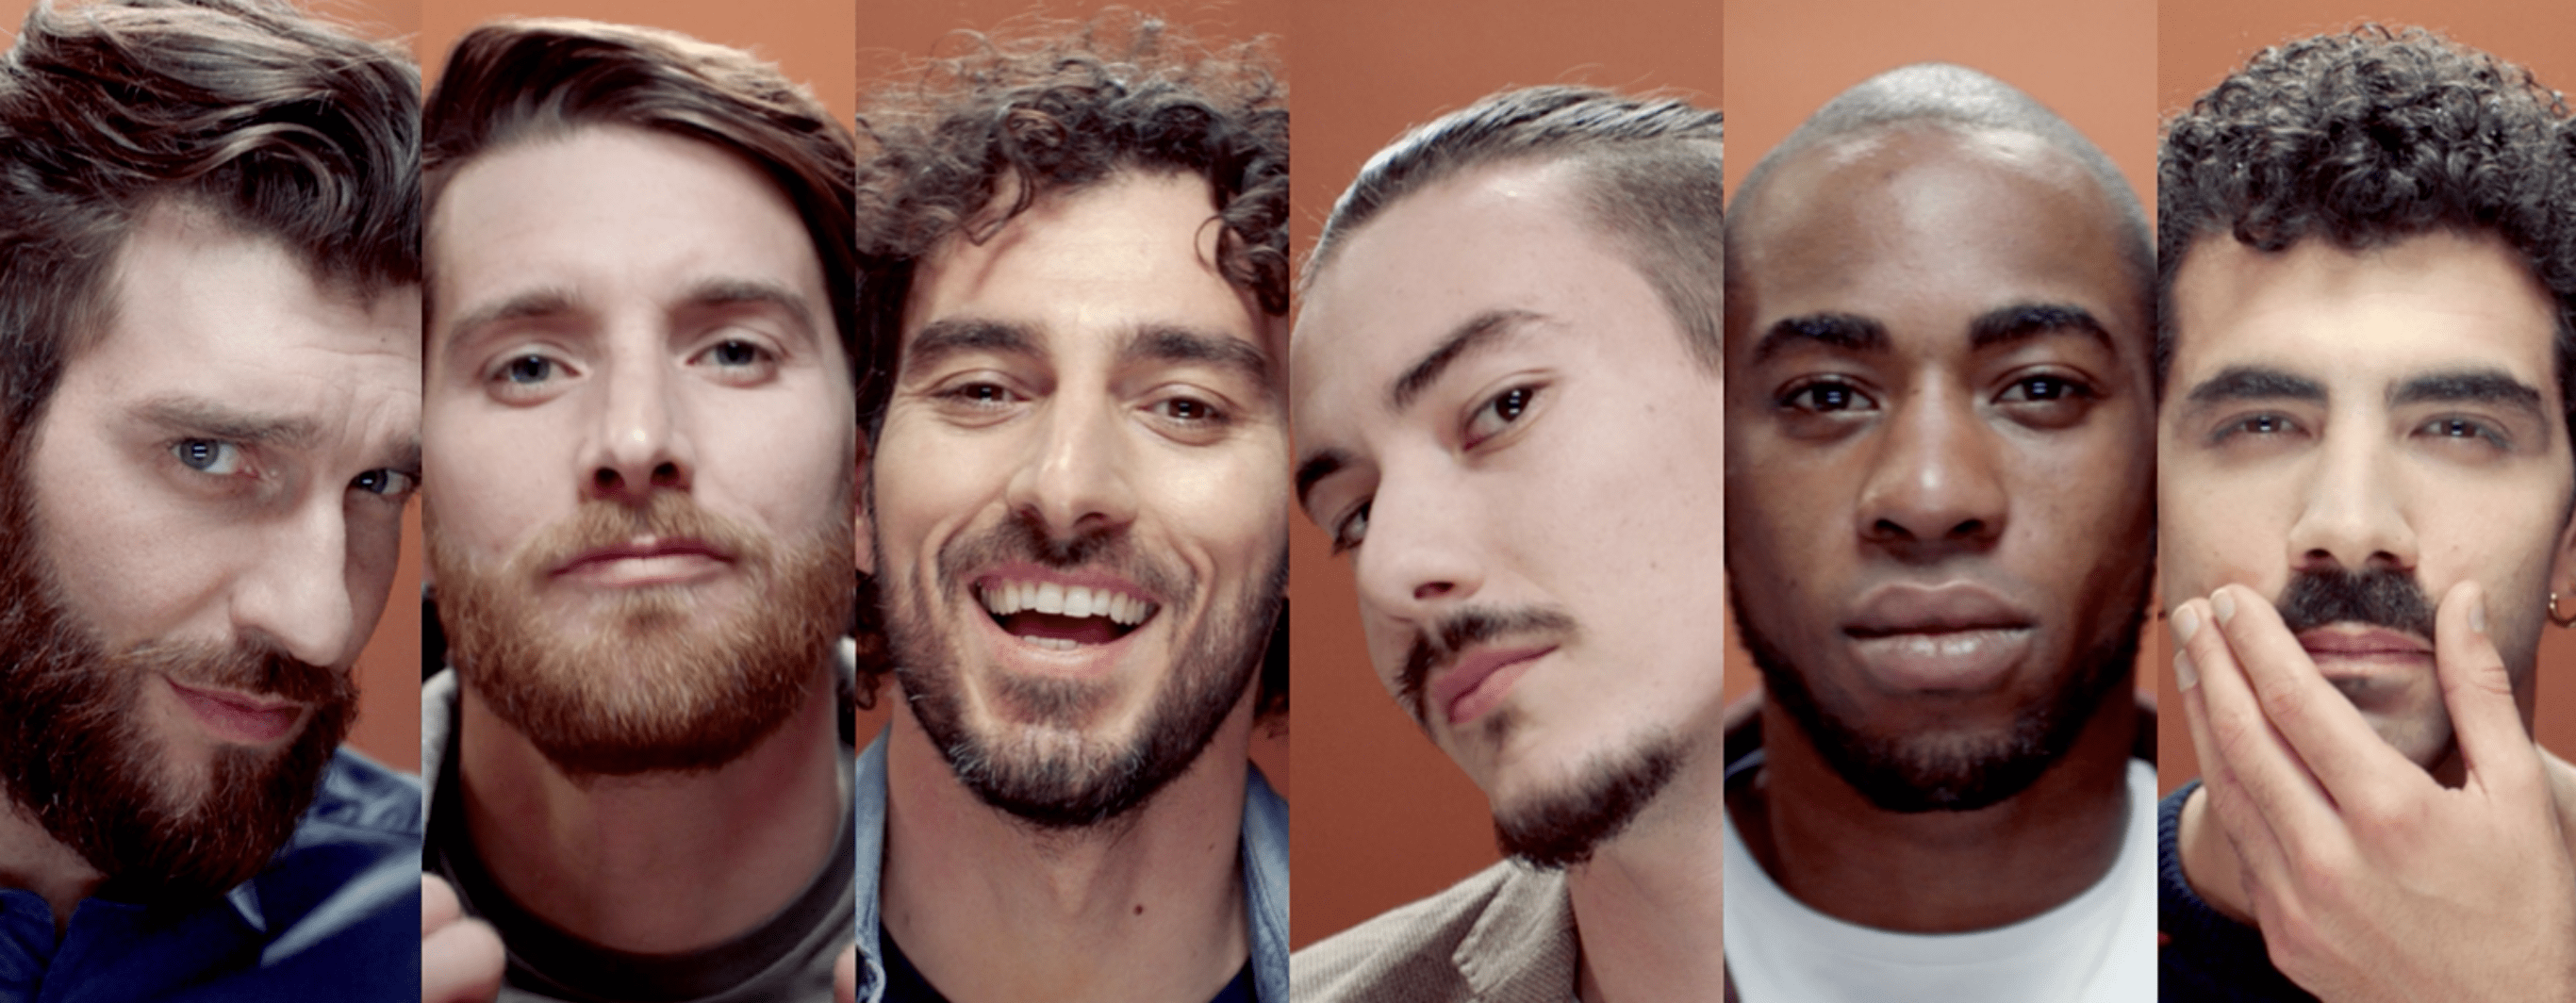 10 Mejores Tipos o Estilos de Barba Corta para Hombres 